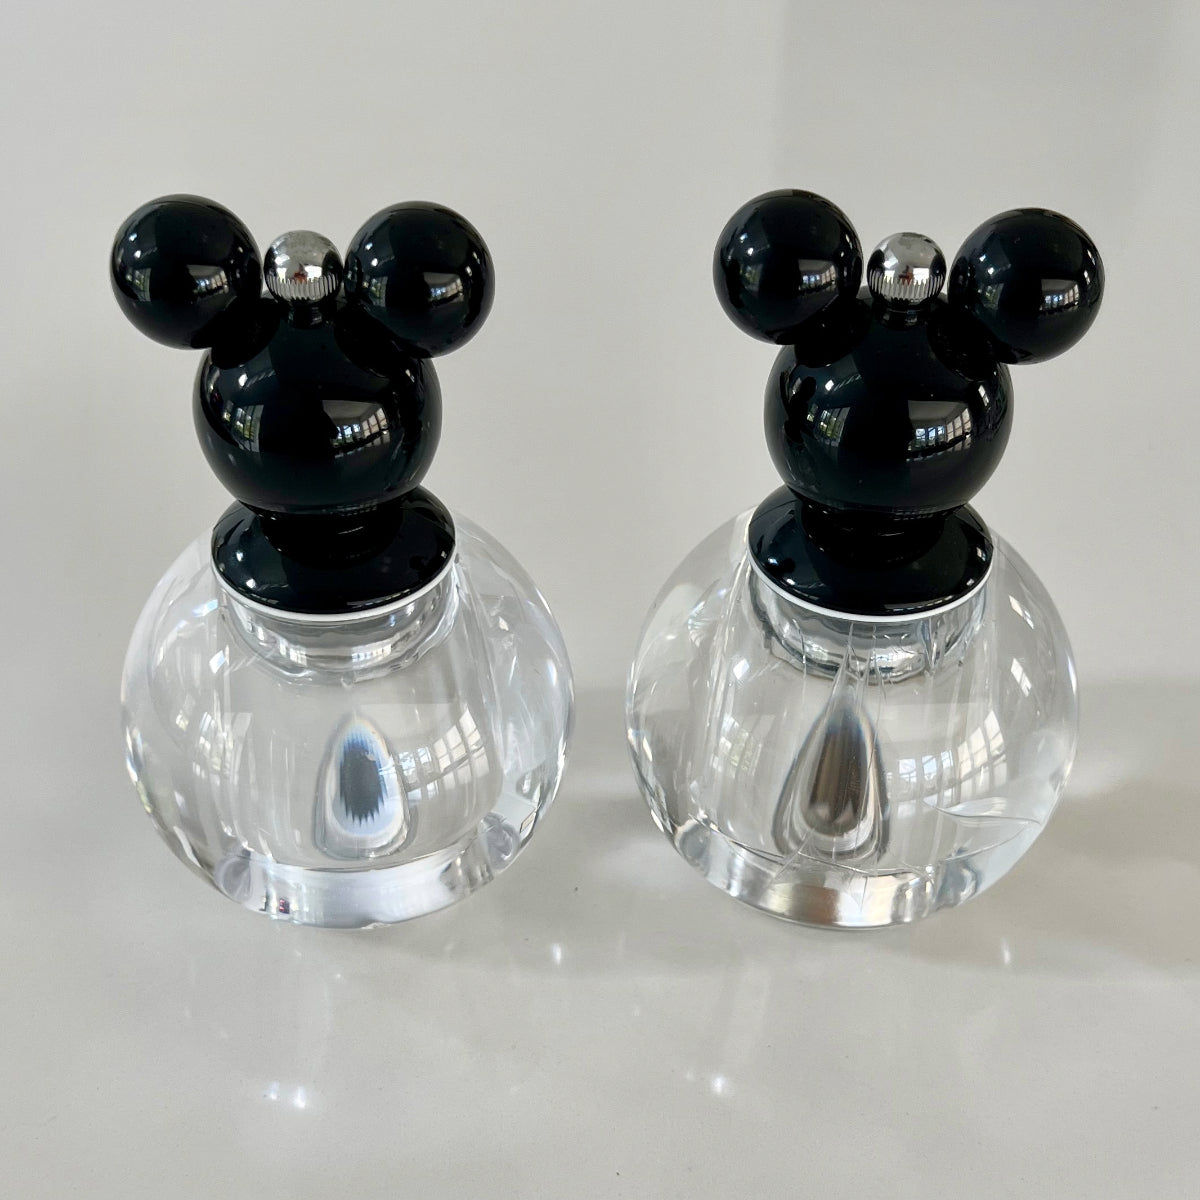 Vintage Disney Glass Salt And Pepper Glass grinders